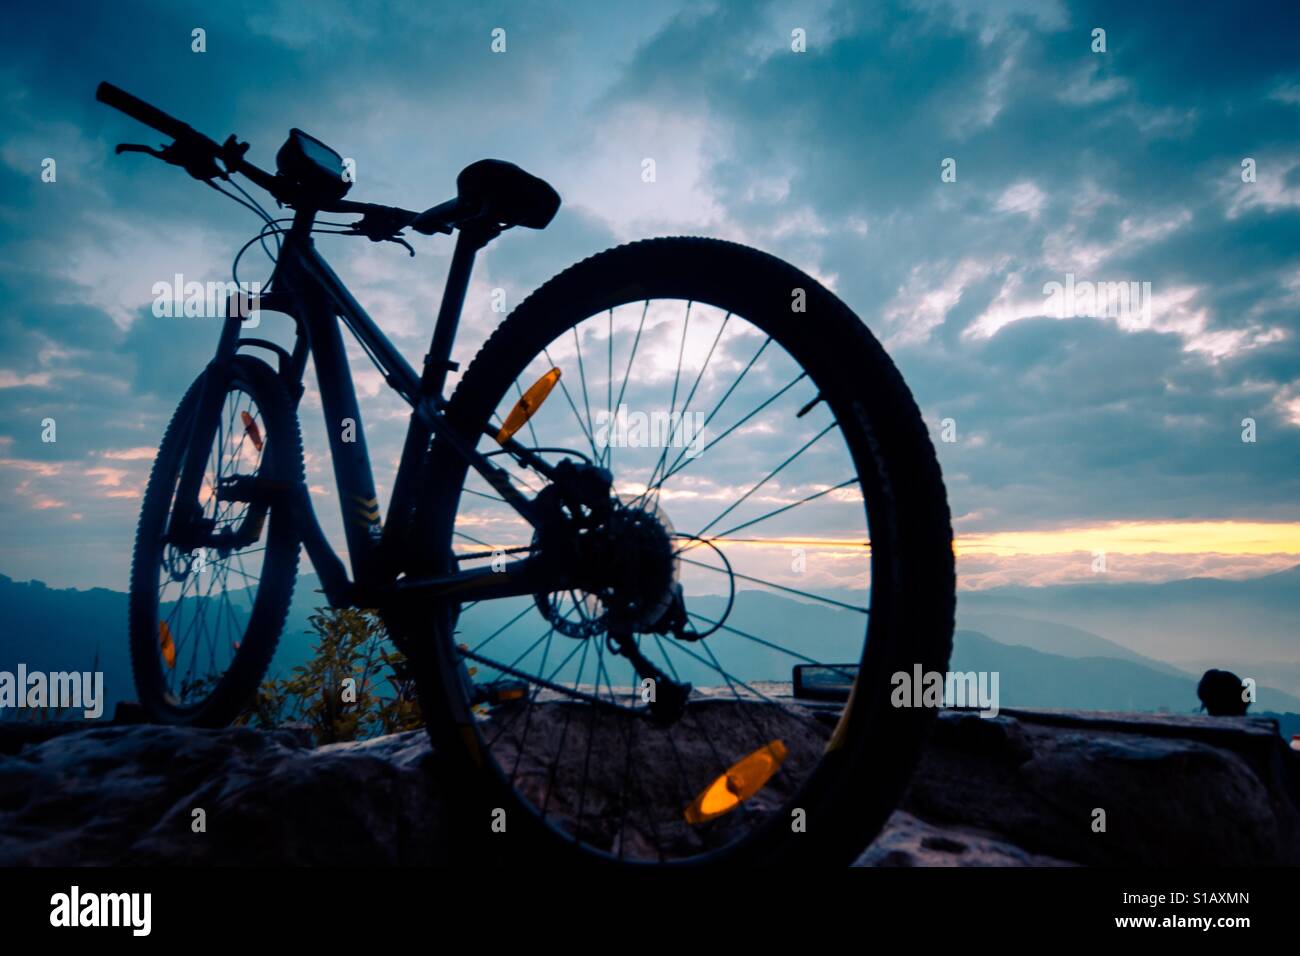 Bicycle at sunrise Stock Photo